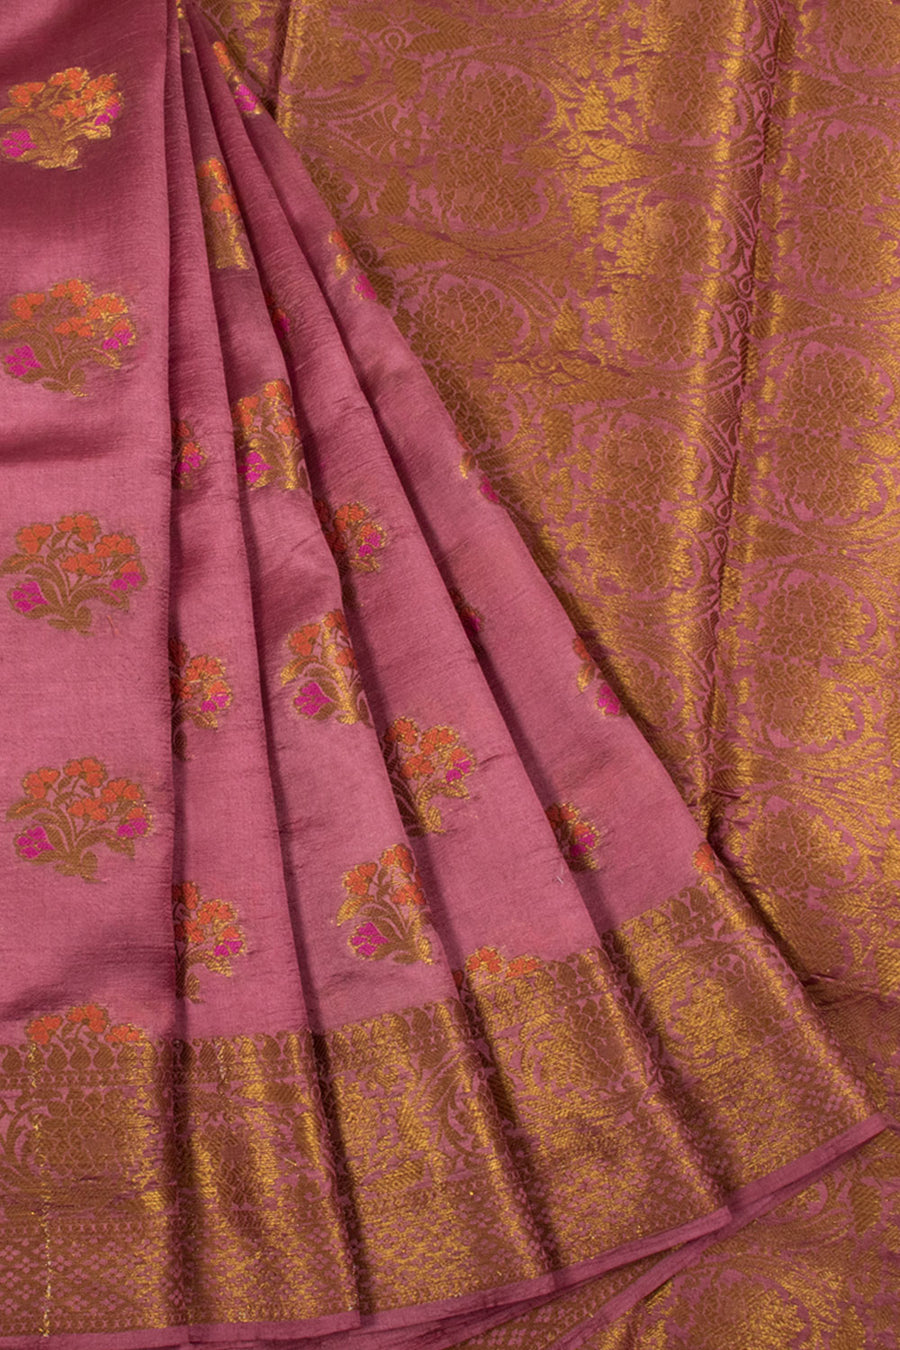 Handloom Banarasi Katrua Dupion Silk Saree with Floral Motifs, Jangla Border and Pallu